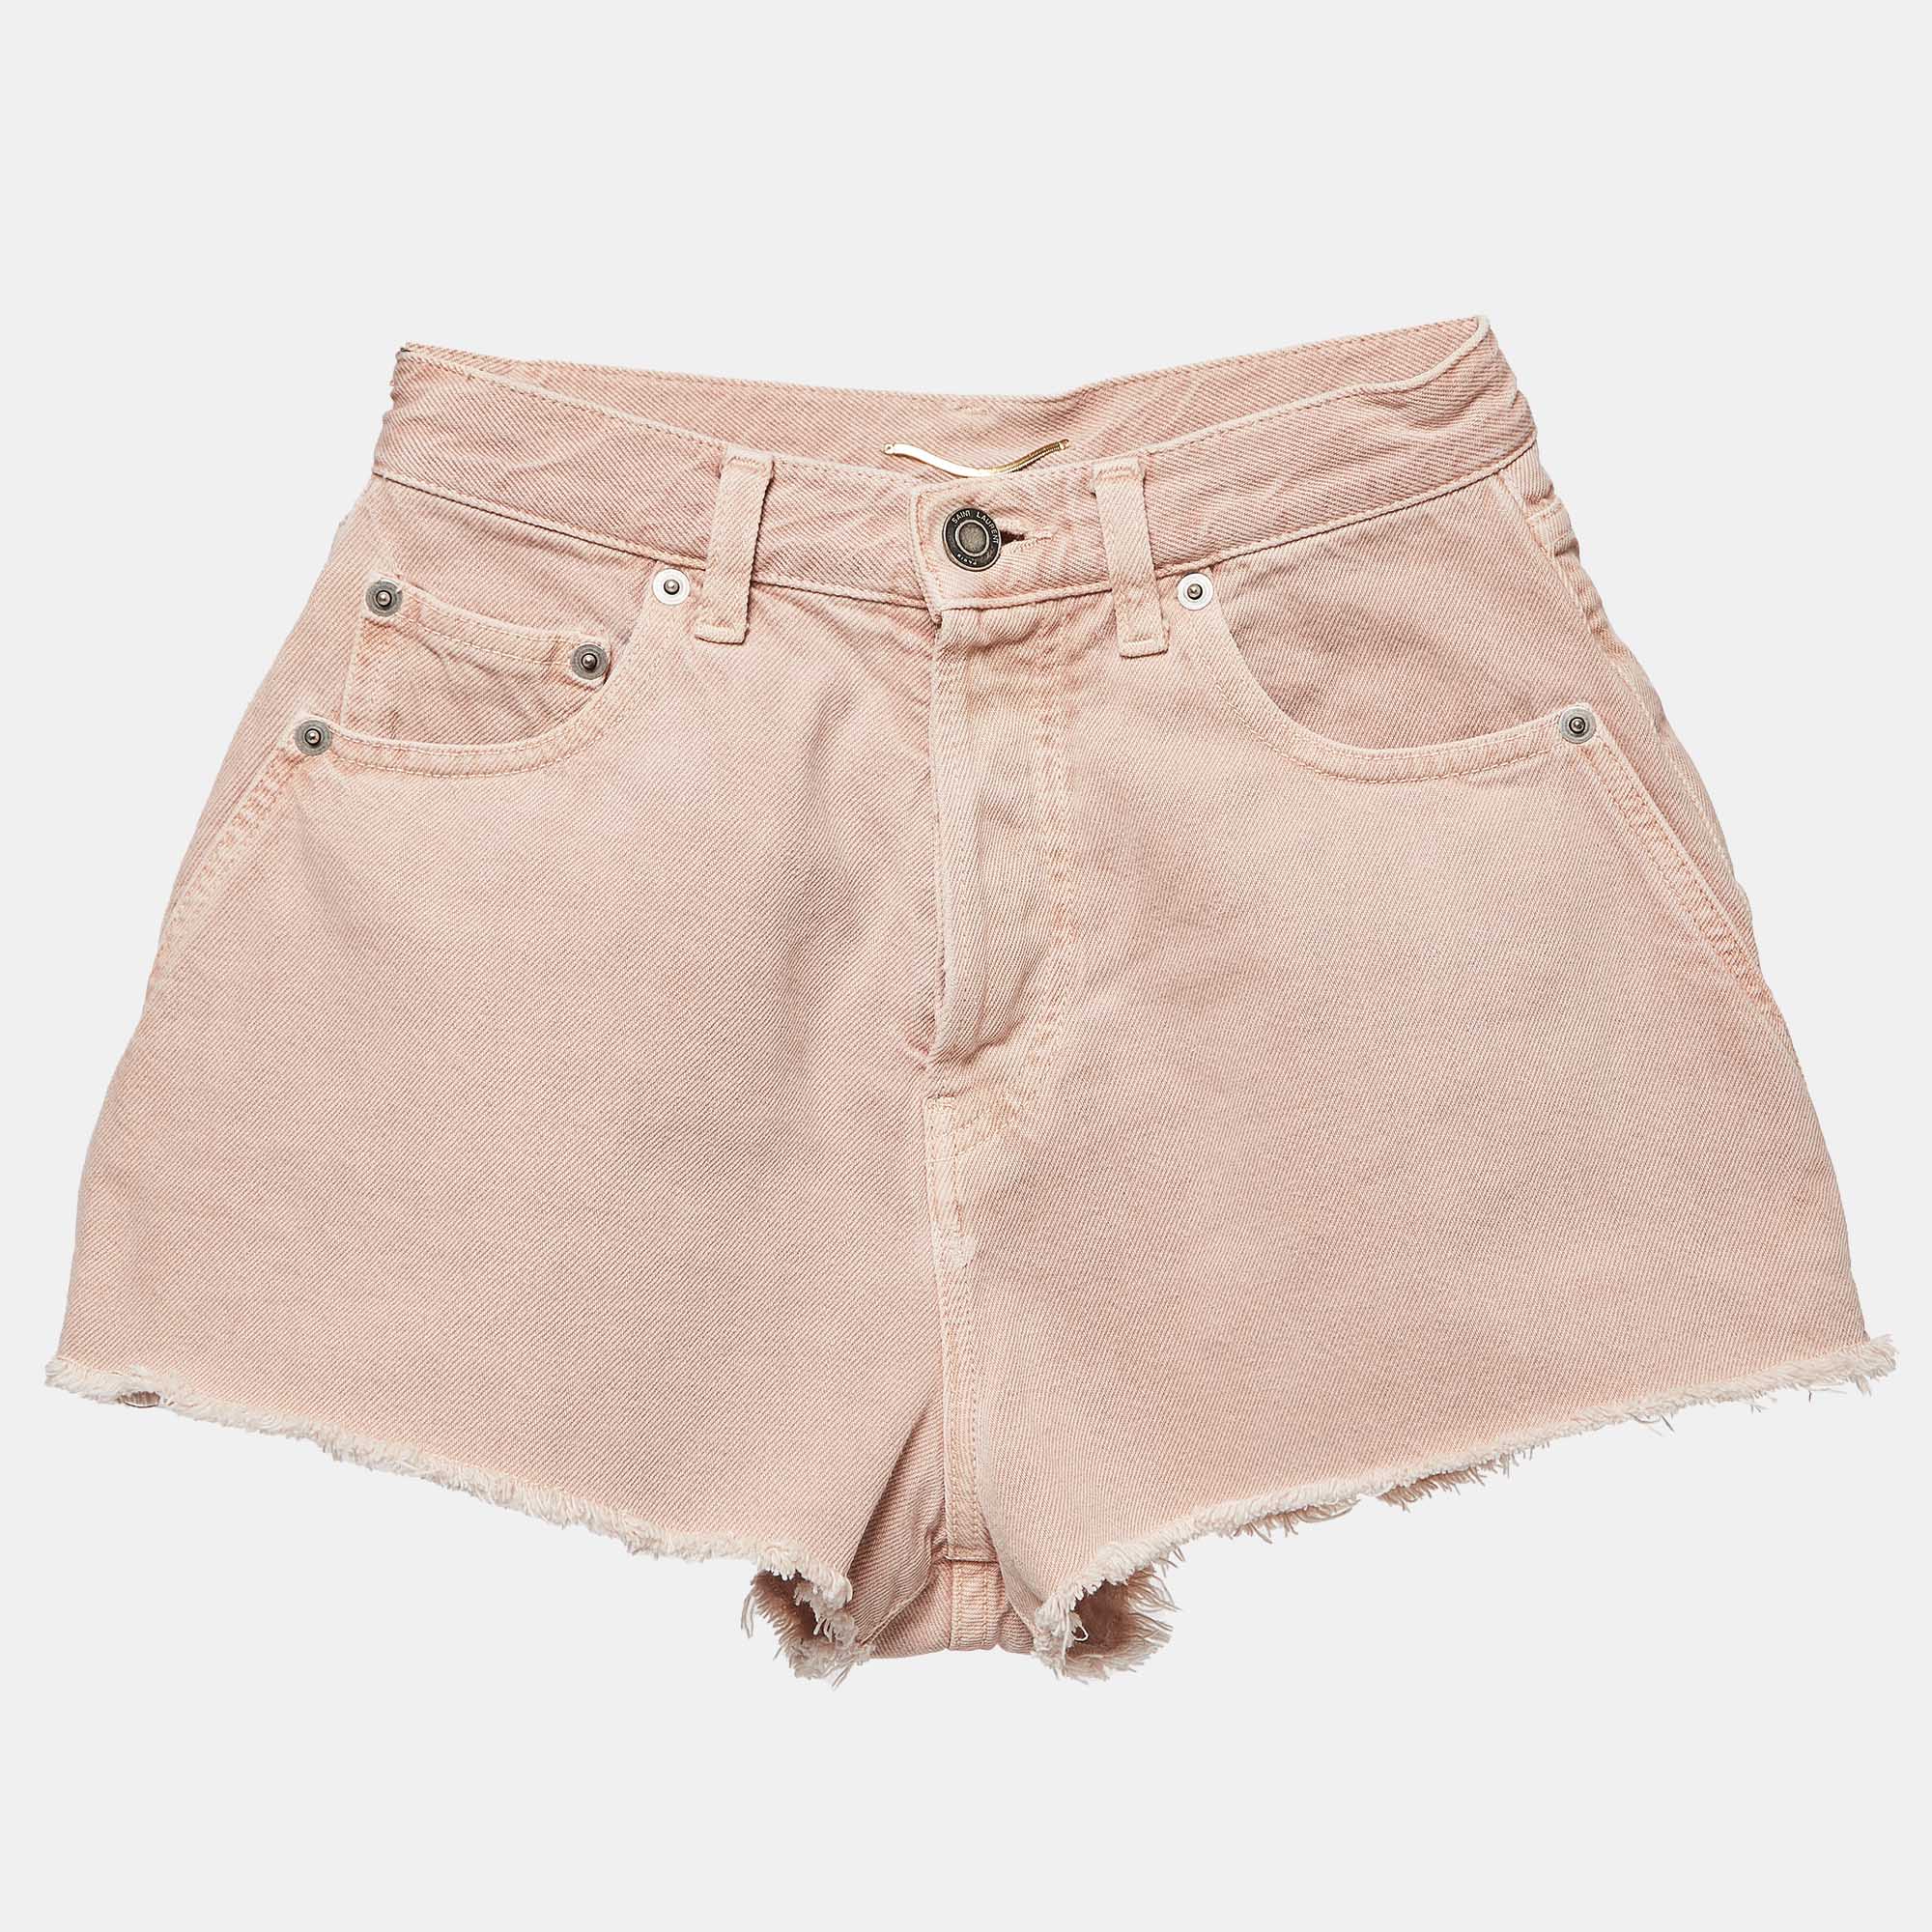 Saint laurent paris saint laurent vintage pink denim shorts s waist 24"